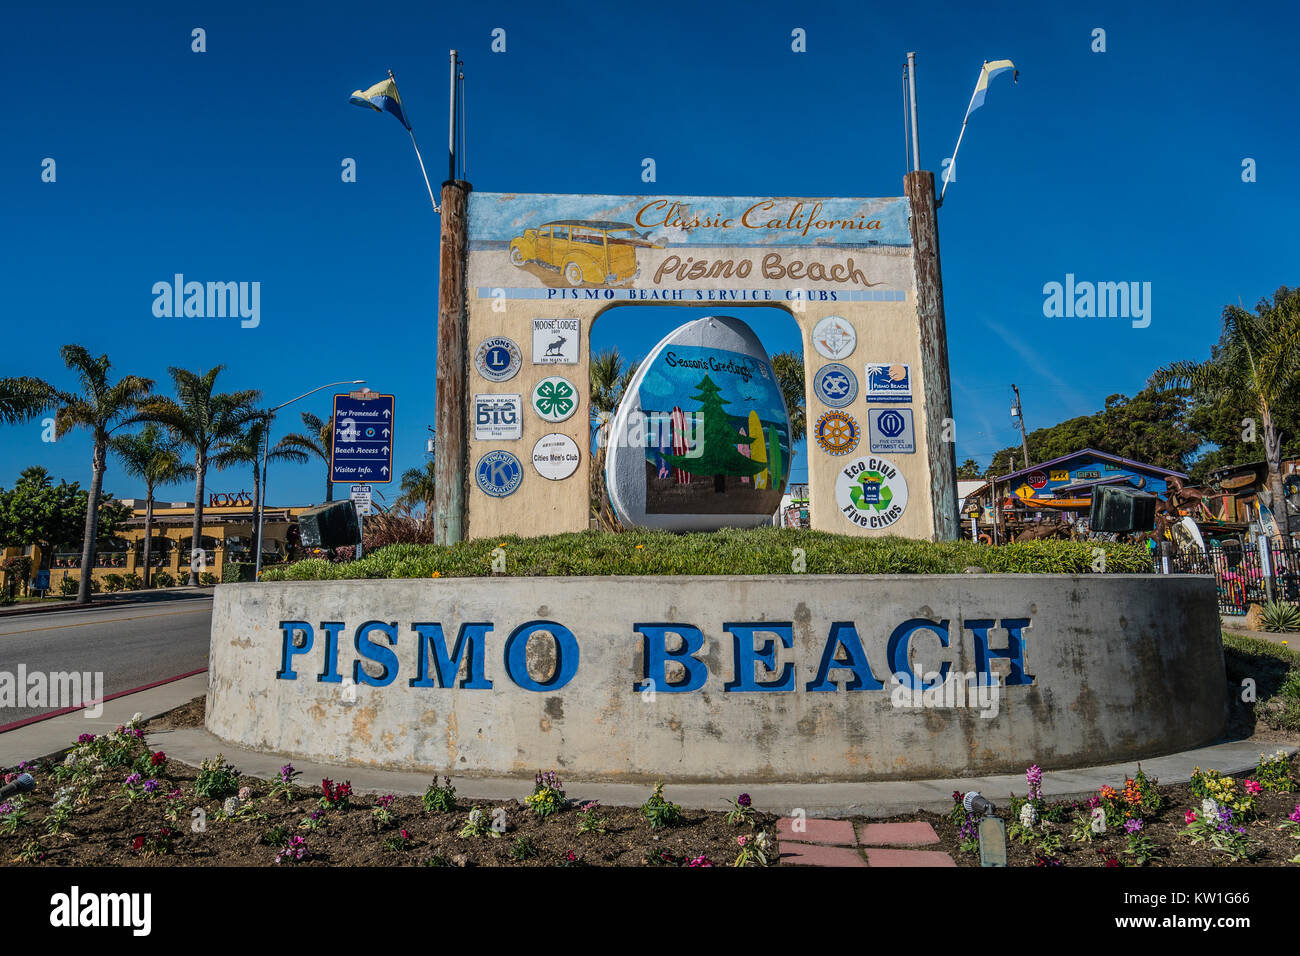 Riesige konkrete Clam am Pismo Beach, CA. Es gibt drei riesige konkrete Muschel Statuen in der Stadt, für seine Muscheln bekannt. Pismo Beach ist die Heimat der actu Stockfoto